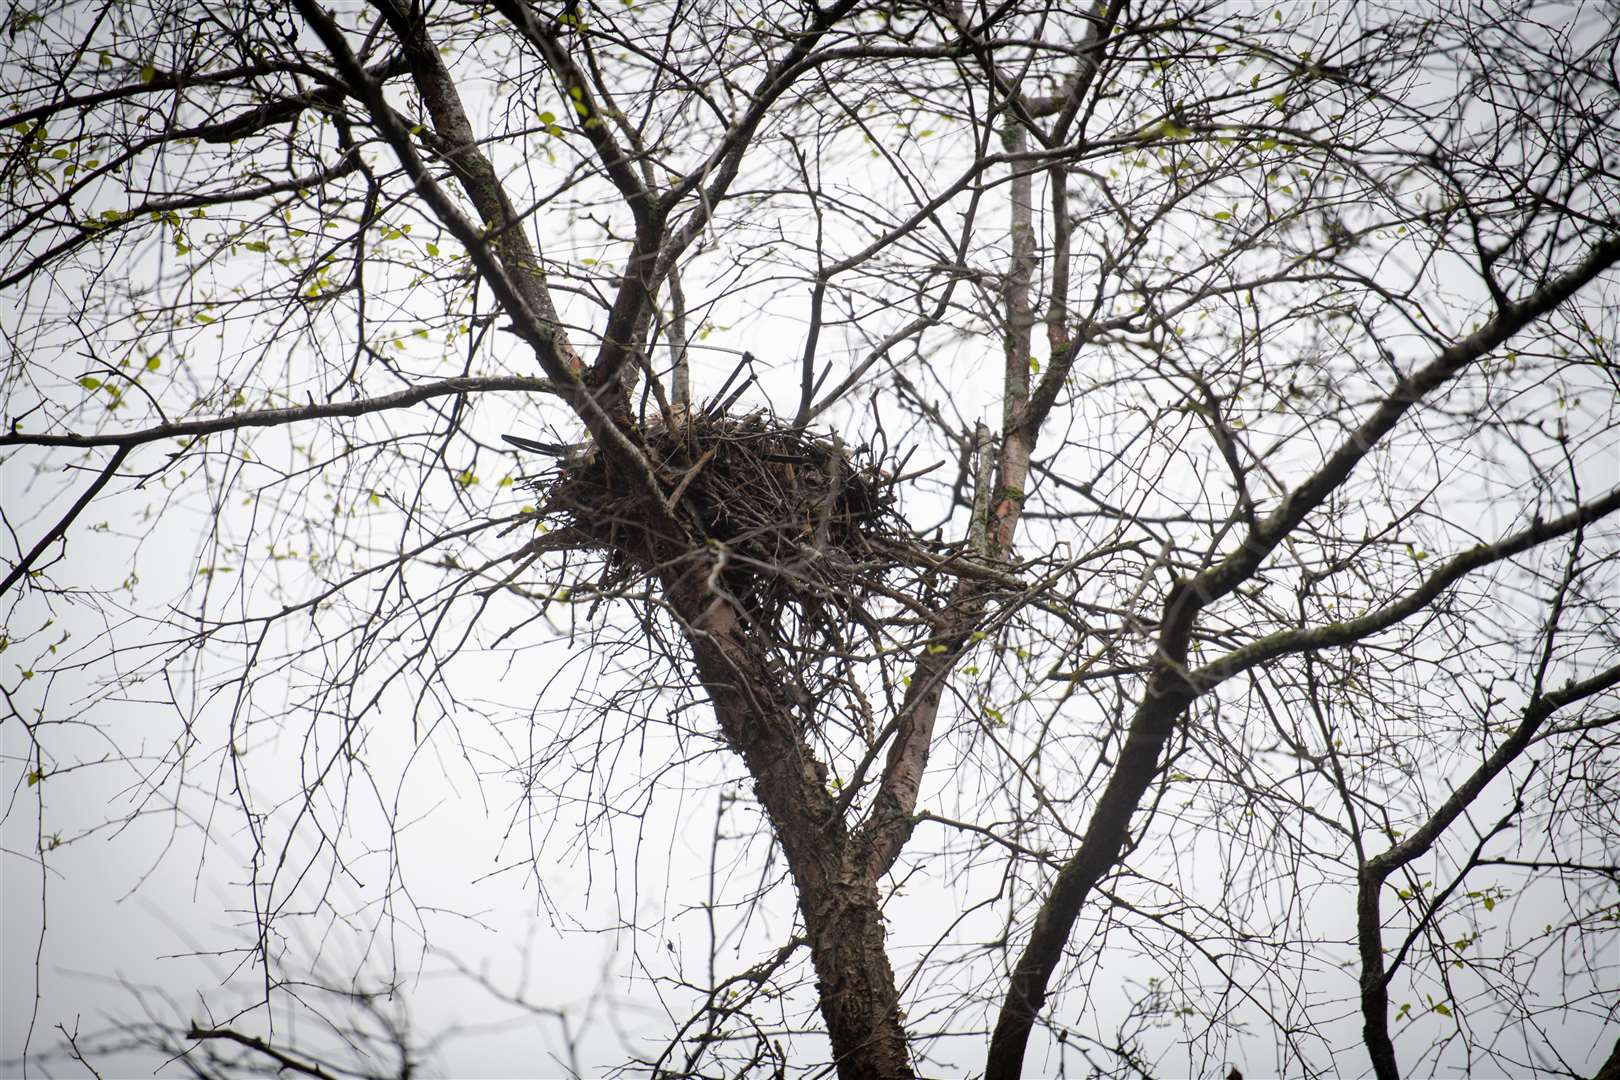 Bird nest. Picture: Callum Mackay.